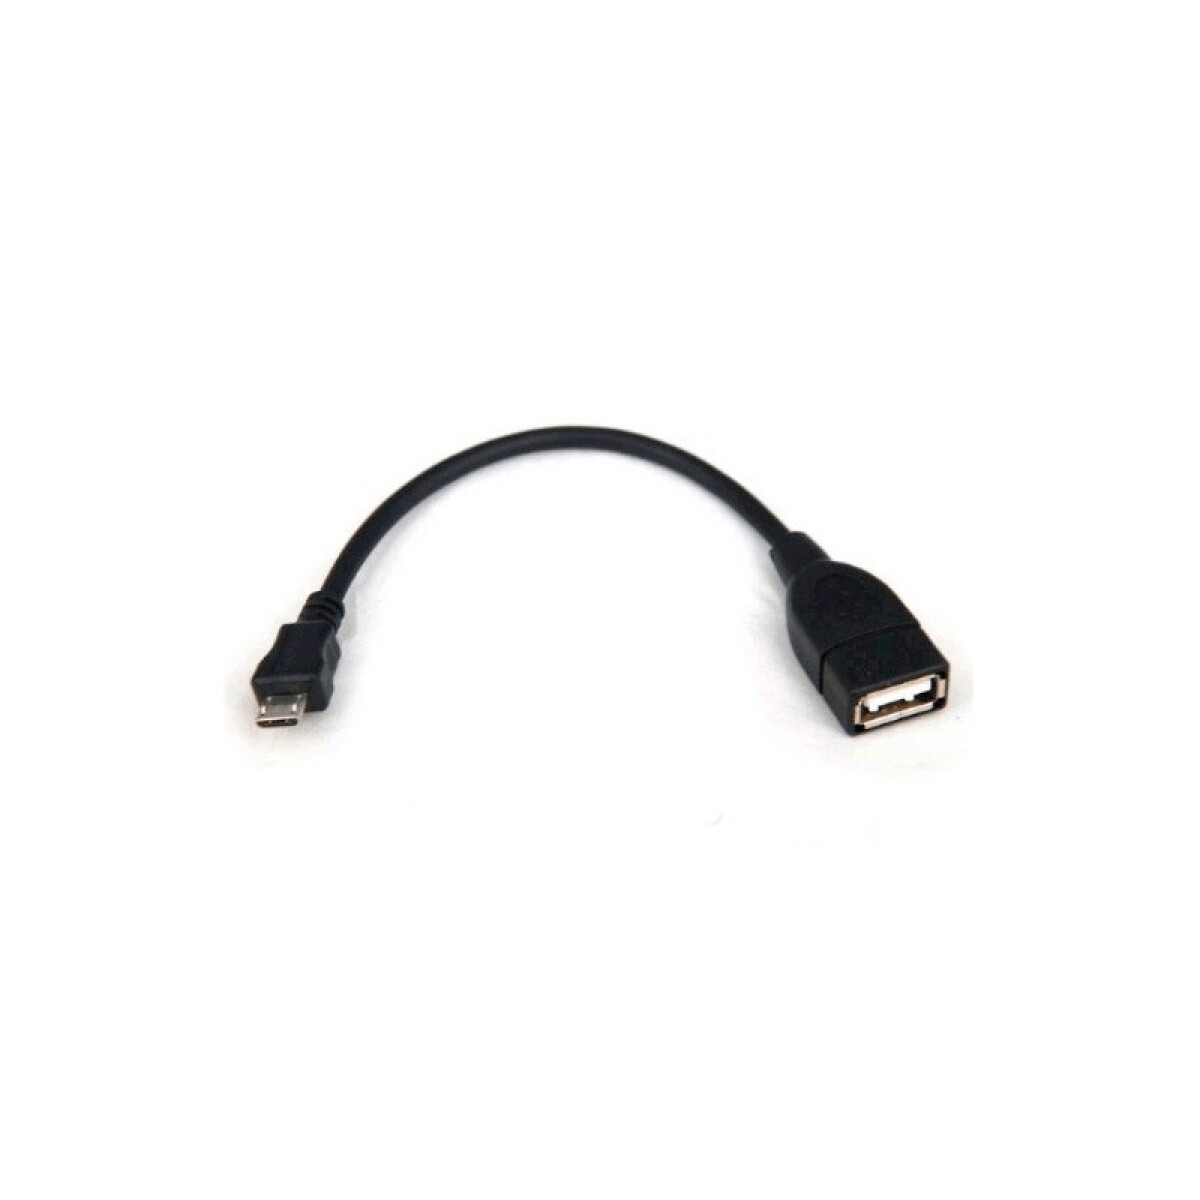 Cable adaptador OTG microUSB M a USB H 